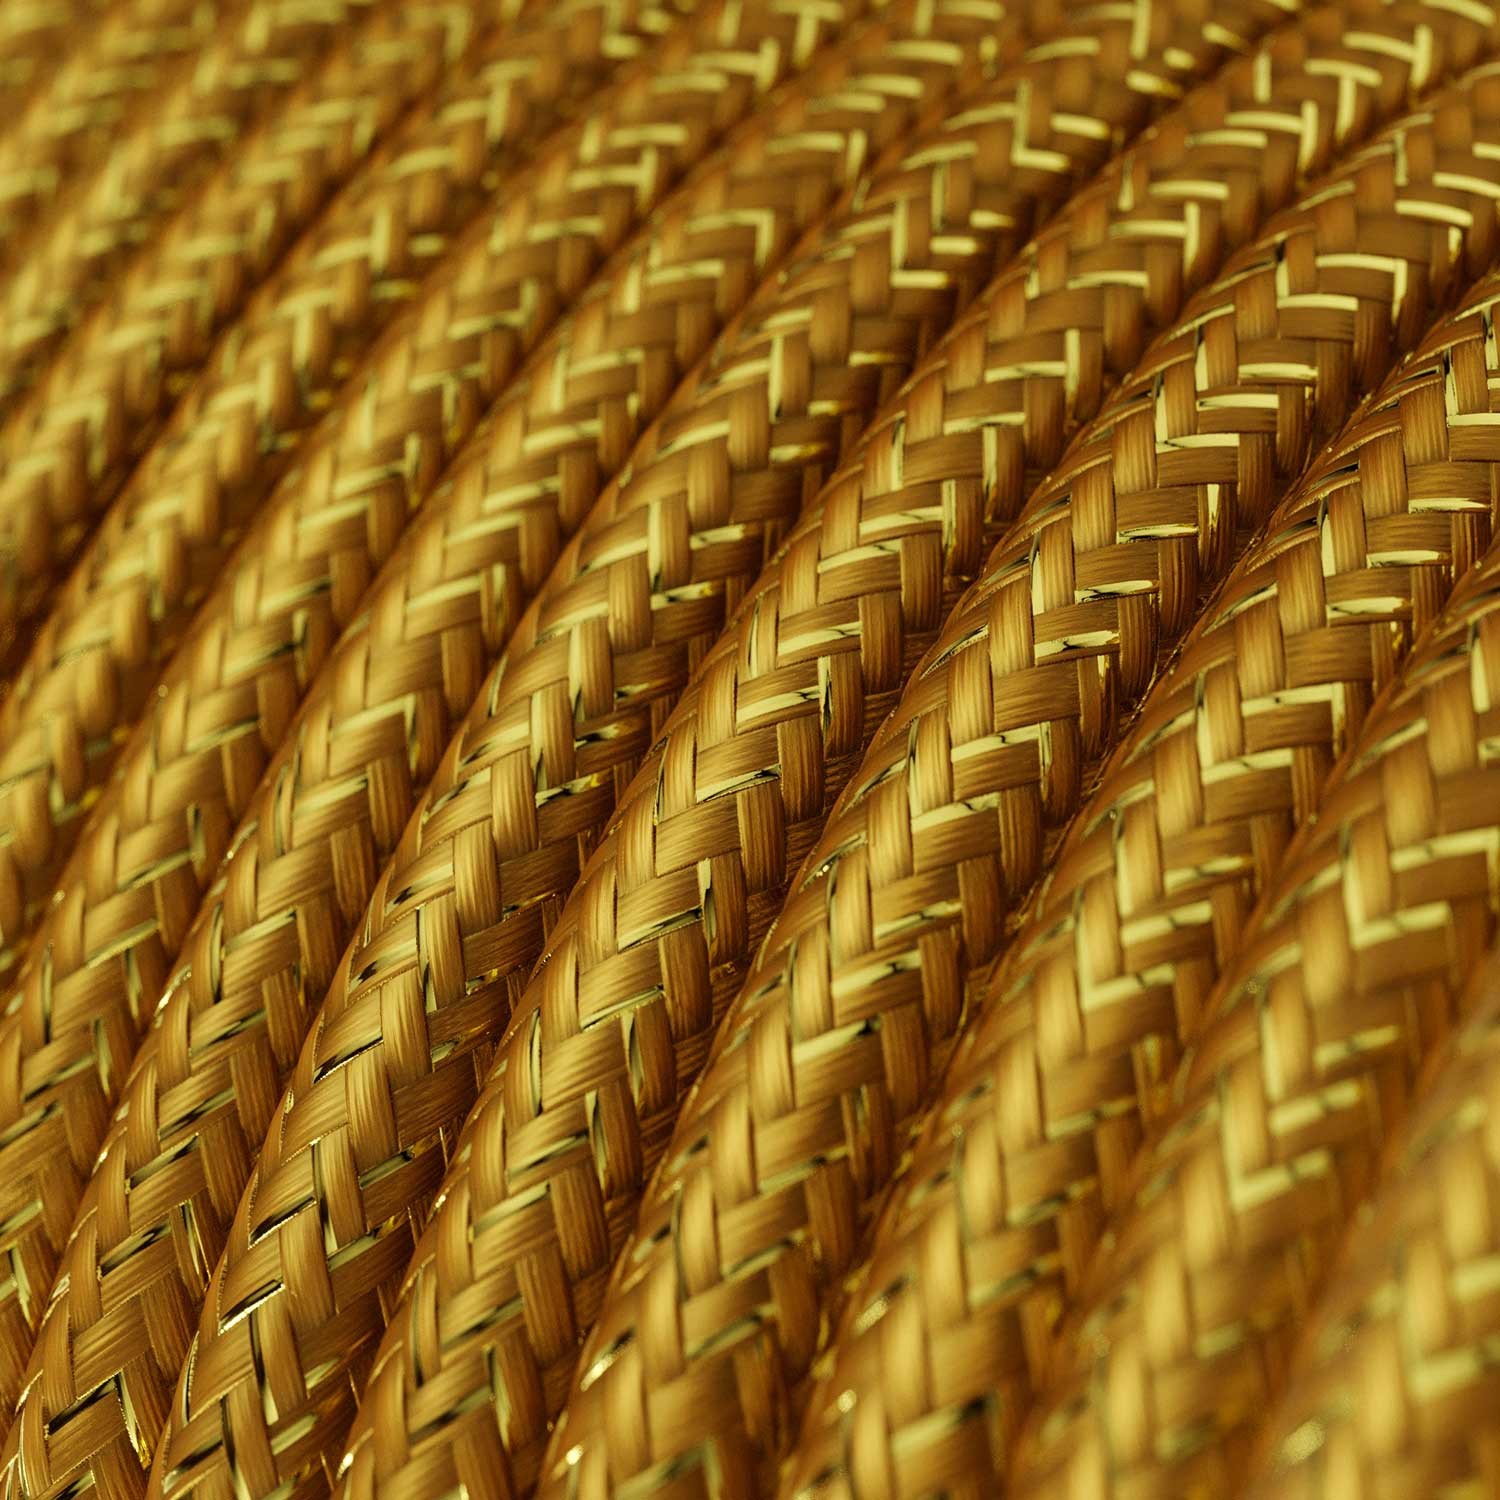 Cable Eléctrico Redondo Recubierto en tejido Efecto Seda Color Sólido, Dorado Glitter RL05